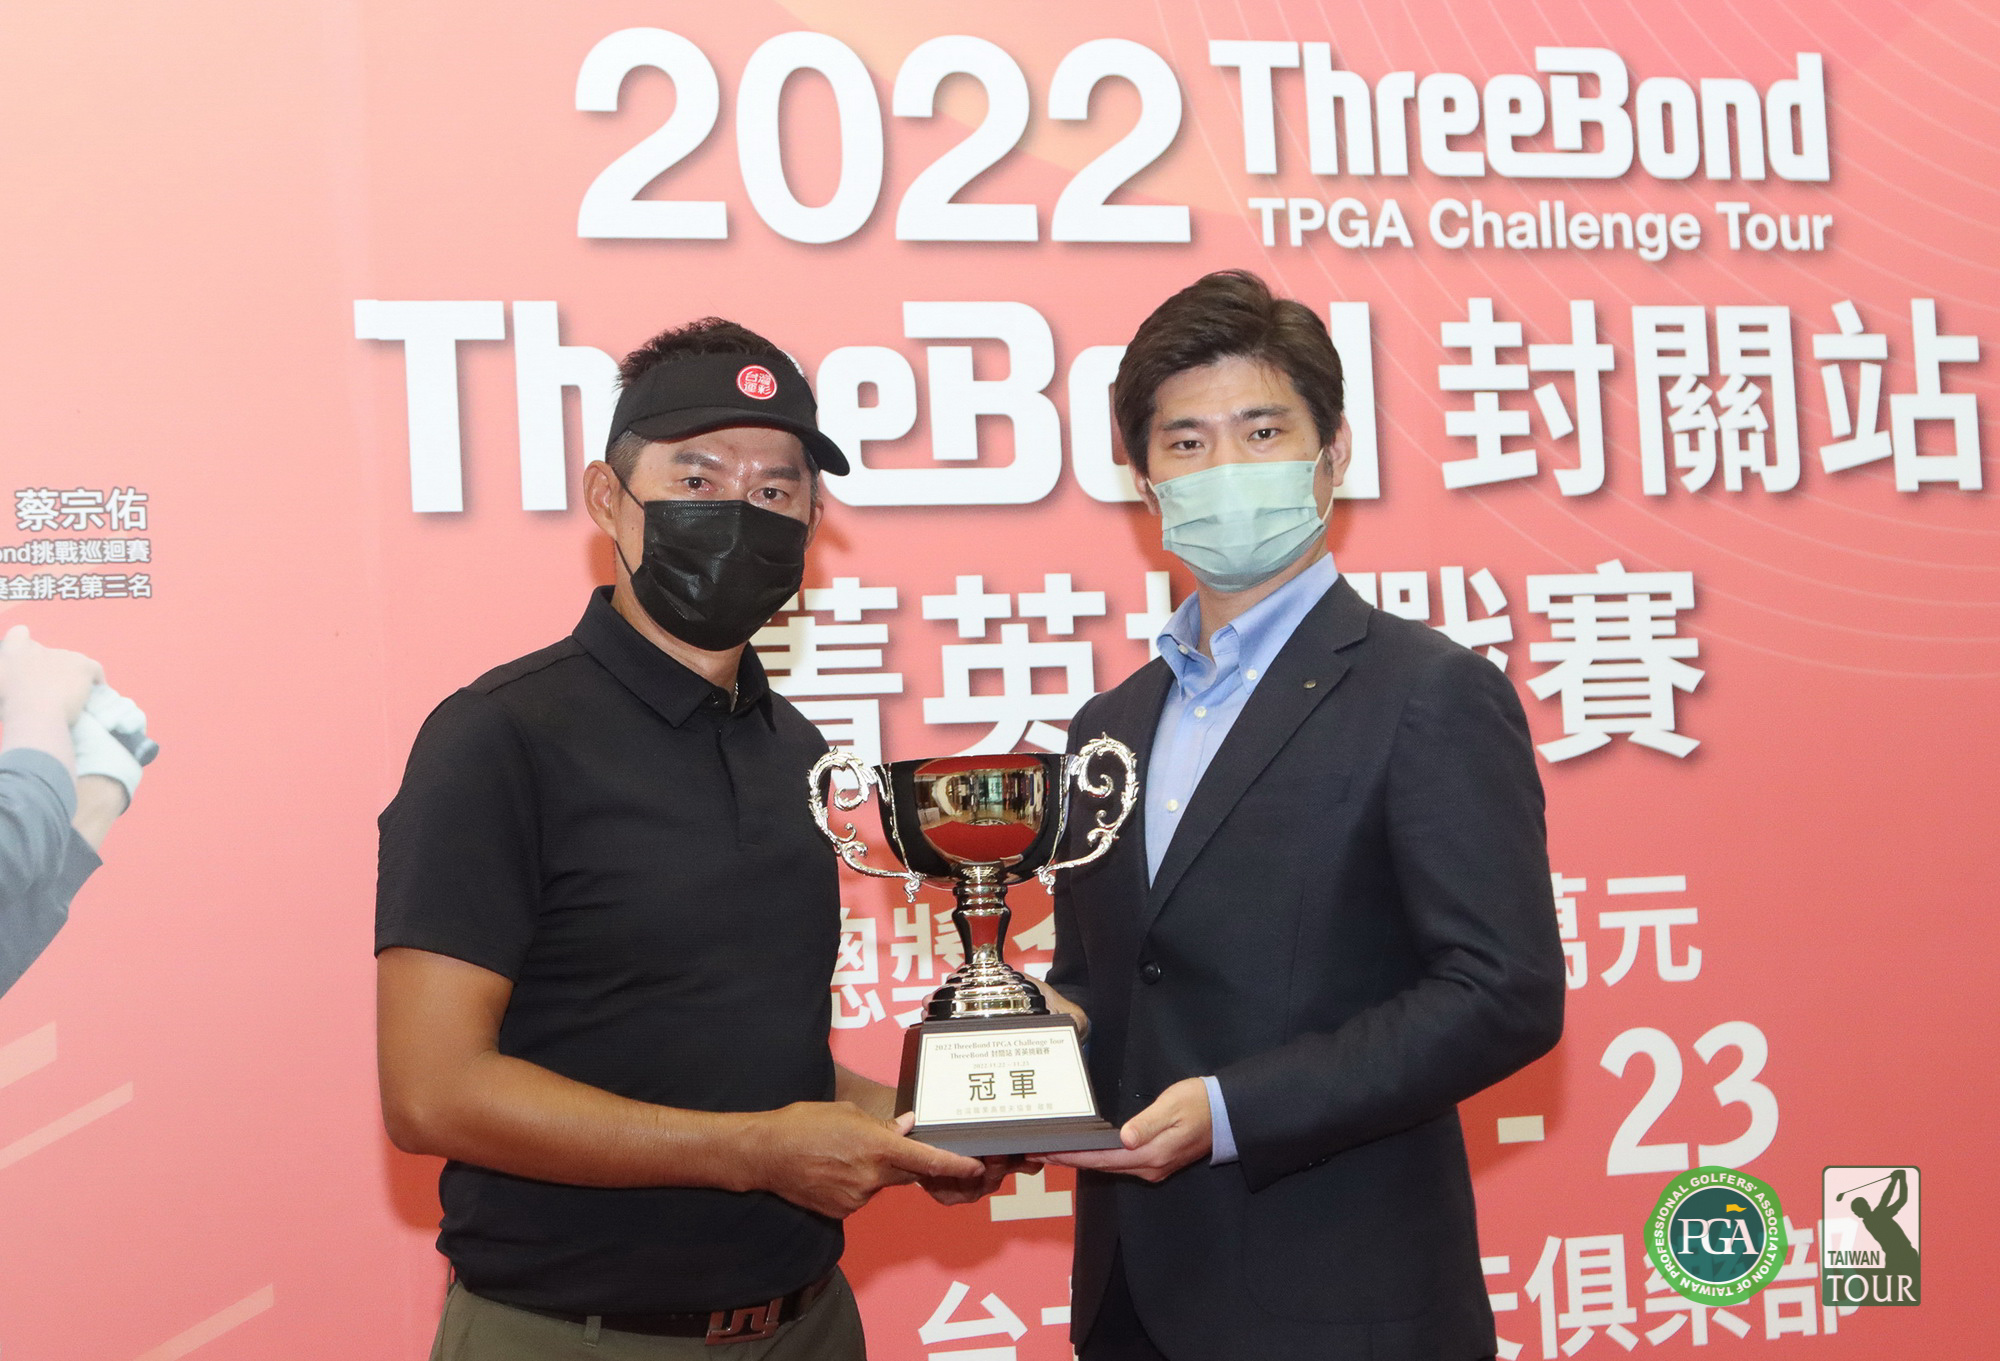 ThreeBond香港有限公司台灣分公司總經理泰地宏和(右)頒冠軍盃給連騼森。鍾豐榮攝影